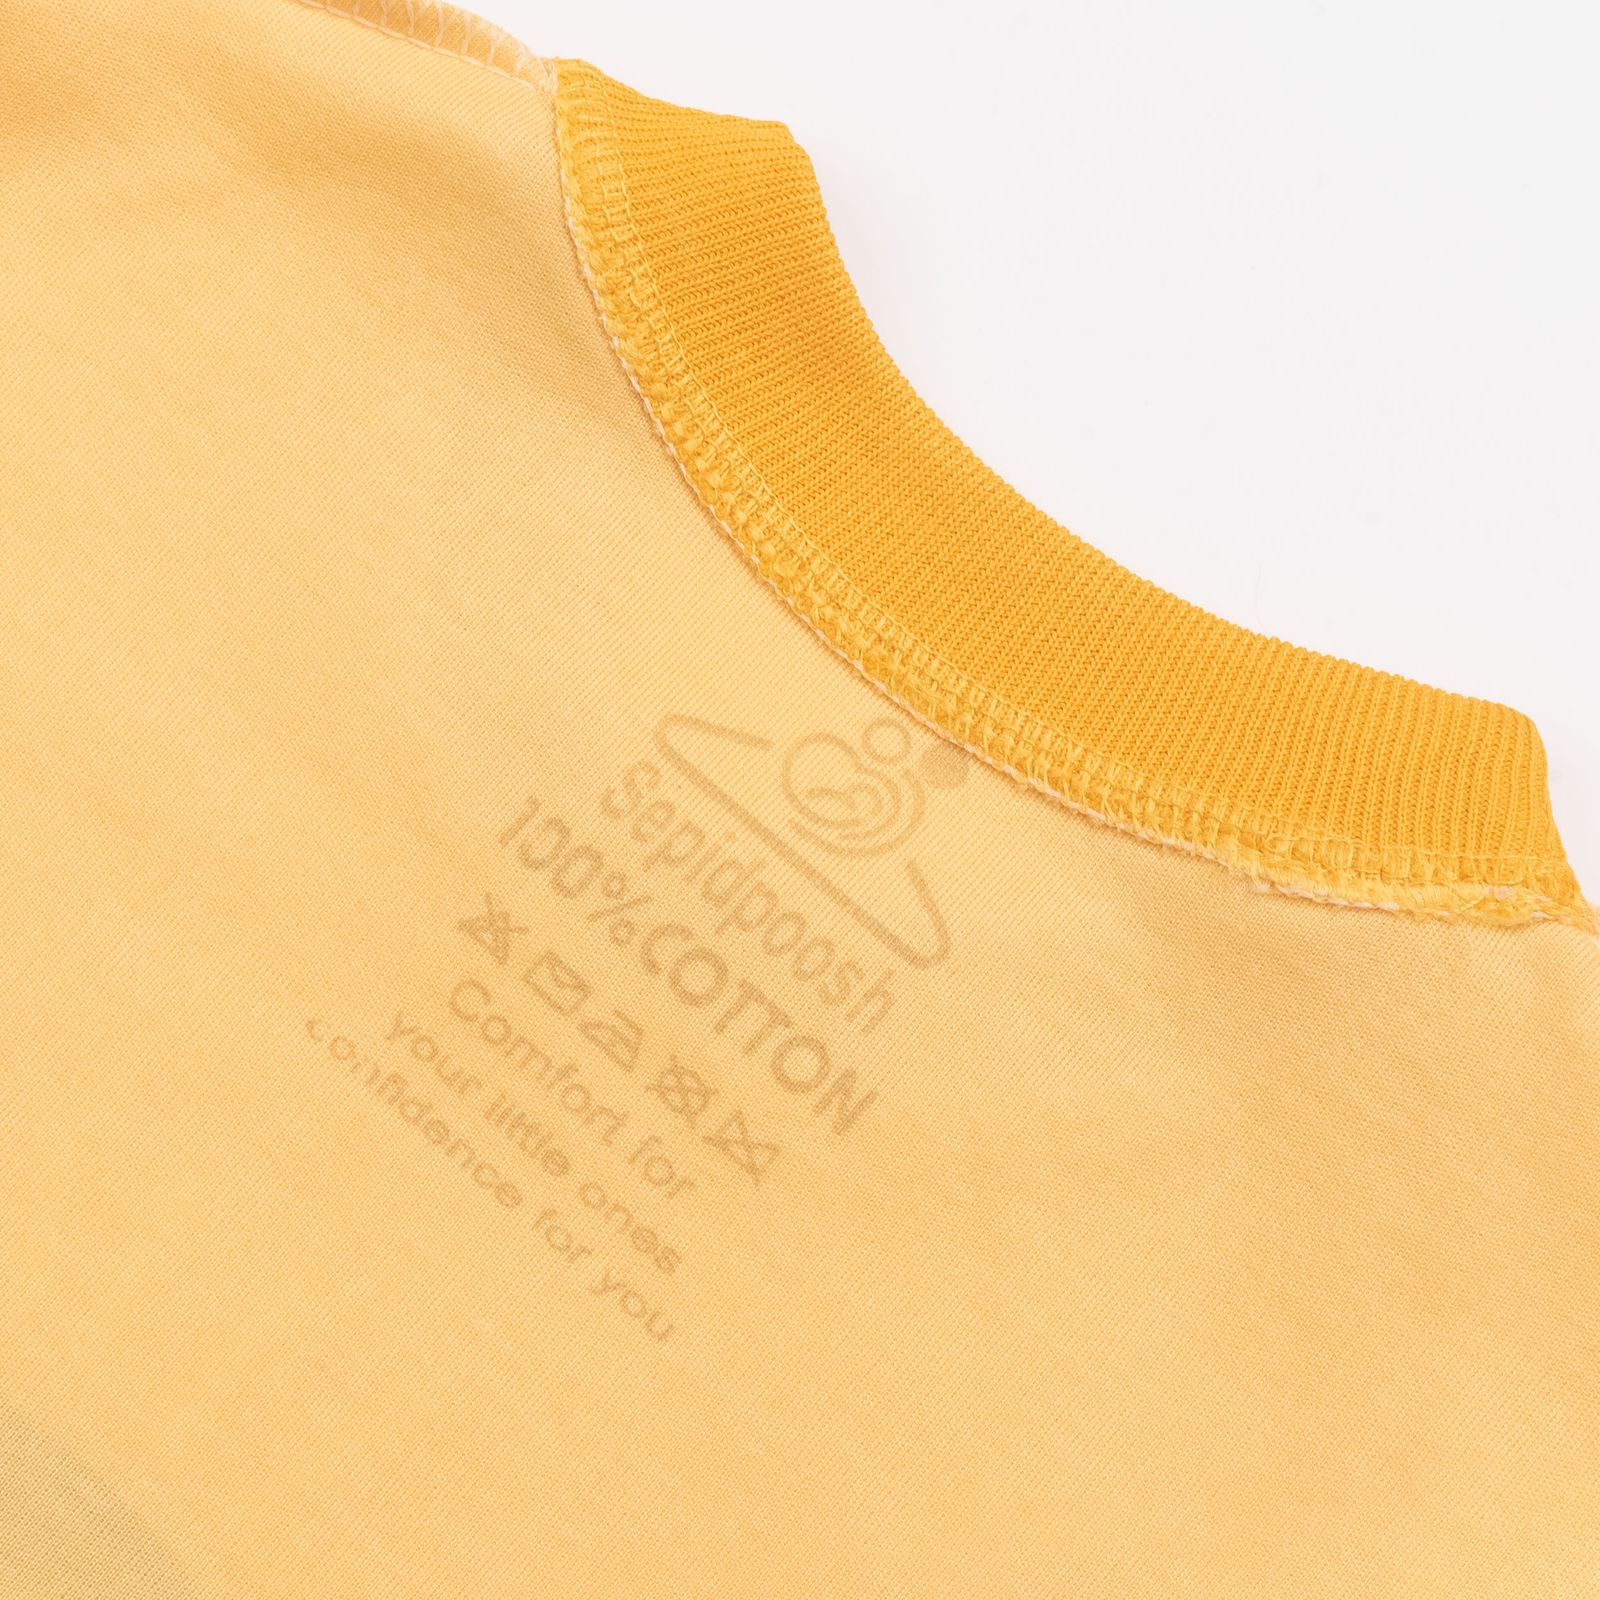 ست تی شرت آستین بلند و شلوار بچگانه سپیدپوش مدل اسنوپی کد 1402512 -  - 4